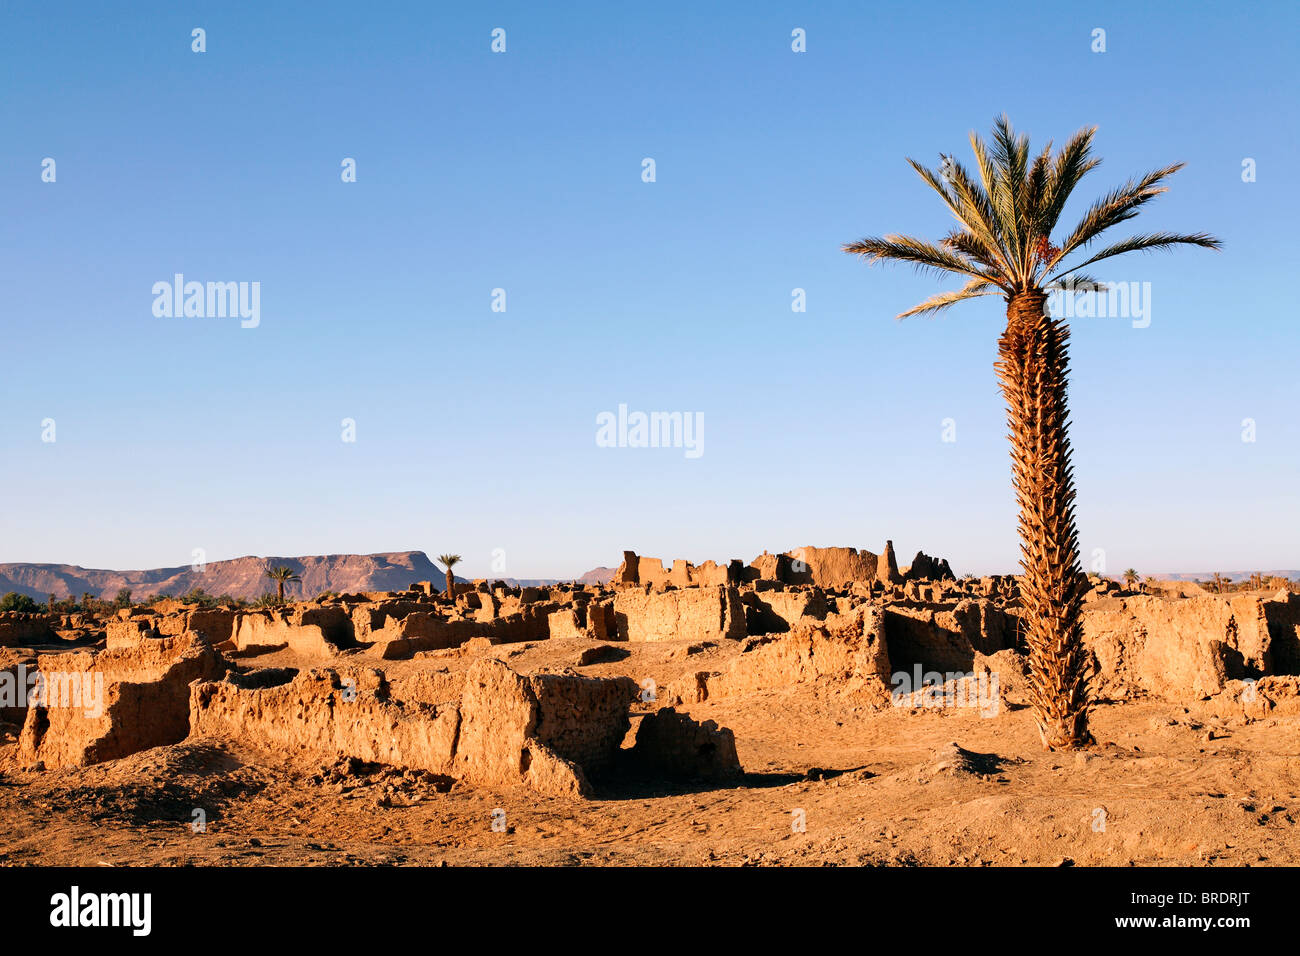 The ancient mud city at Germa, Libya Stock Photo